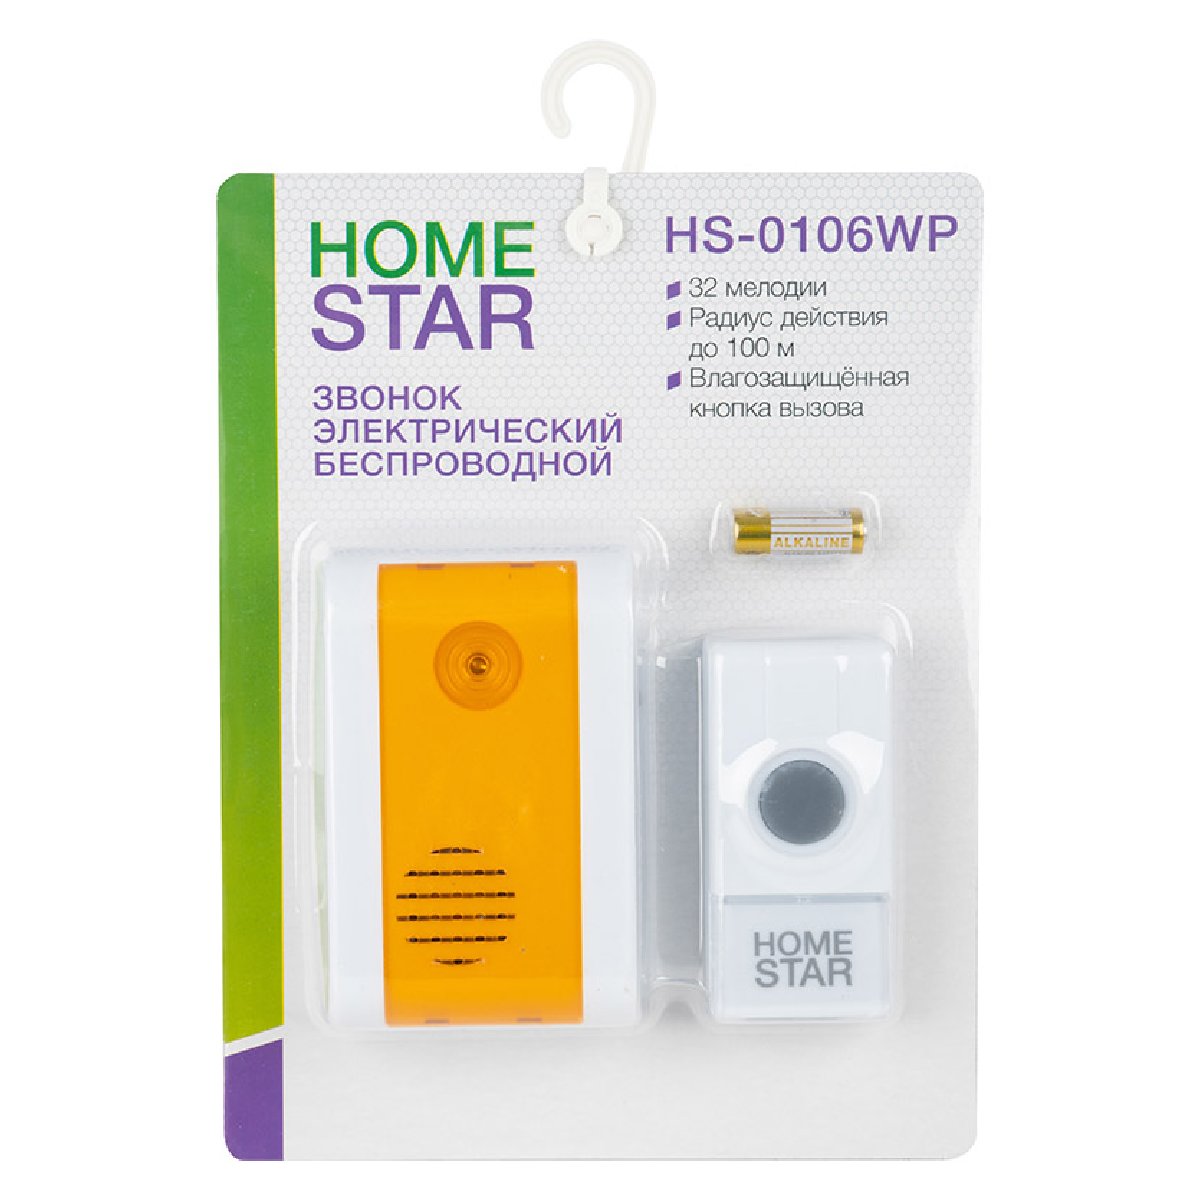 Звонок электрический HomeStar HS-0106WP беспроводной (103611)